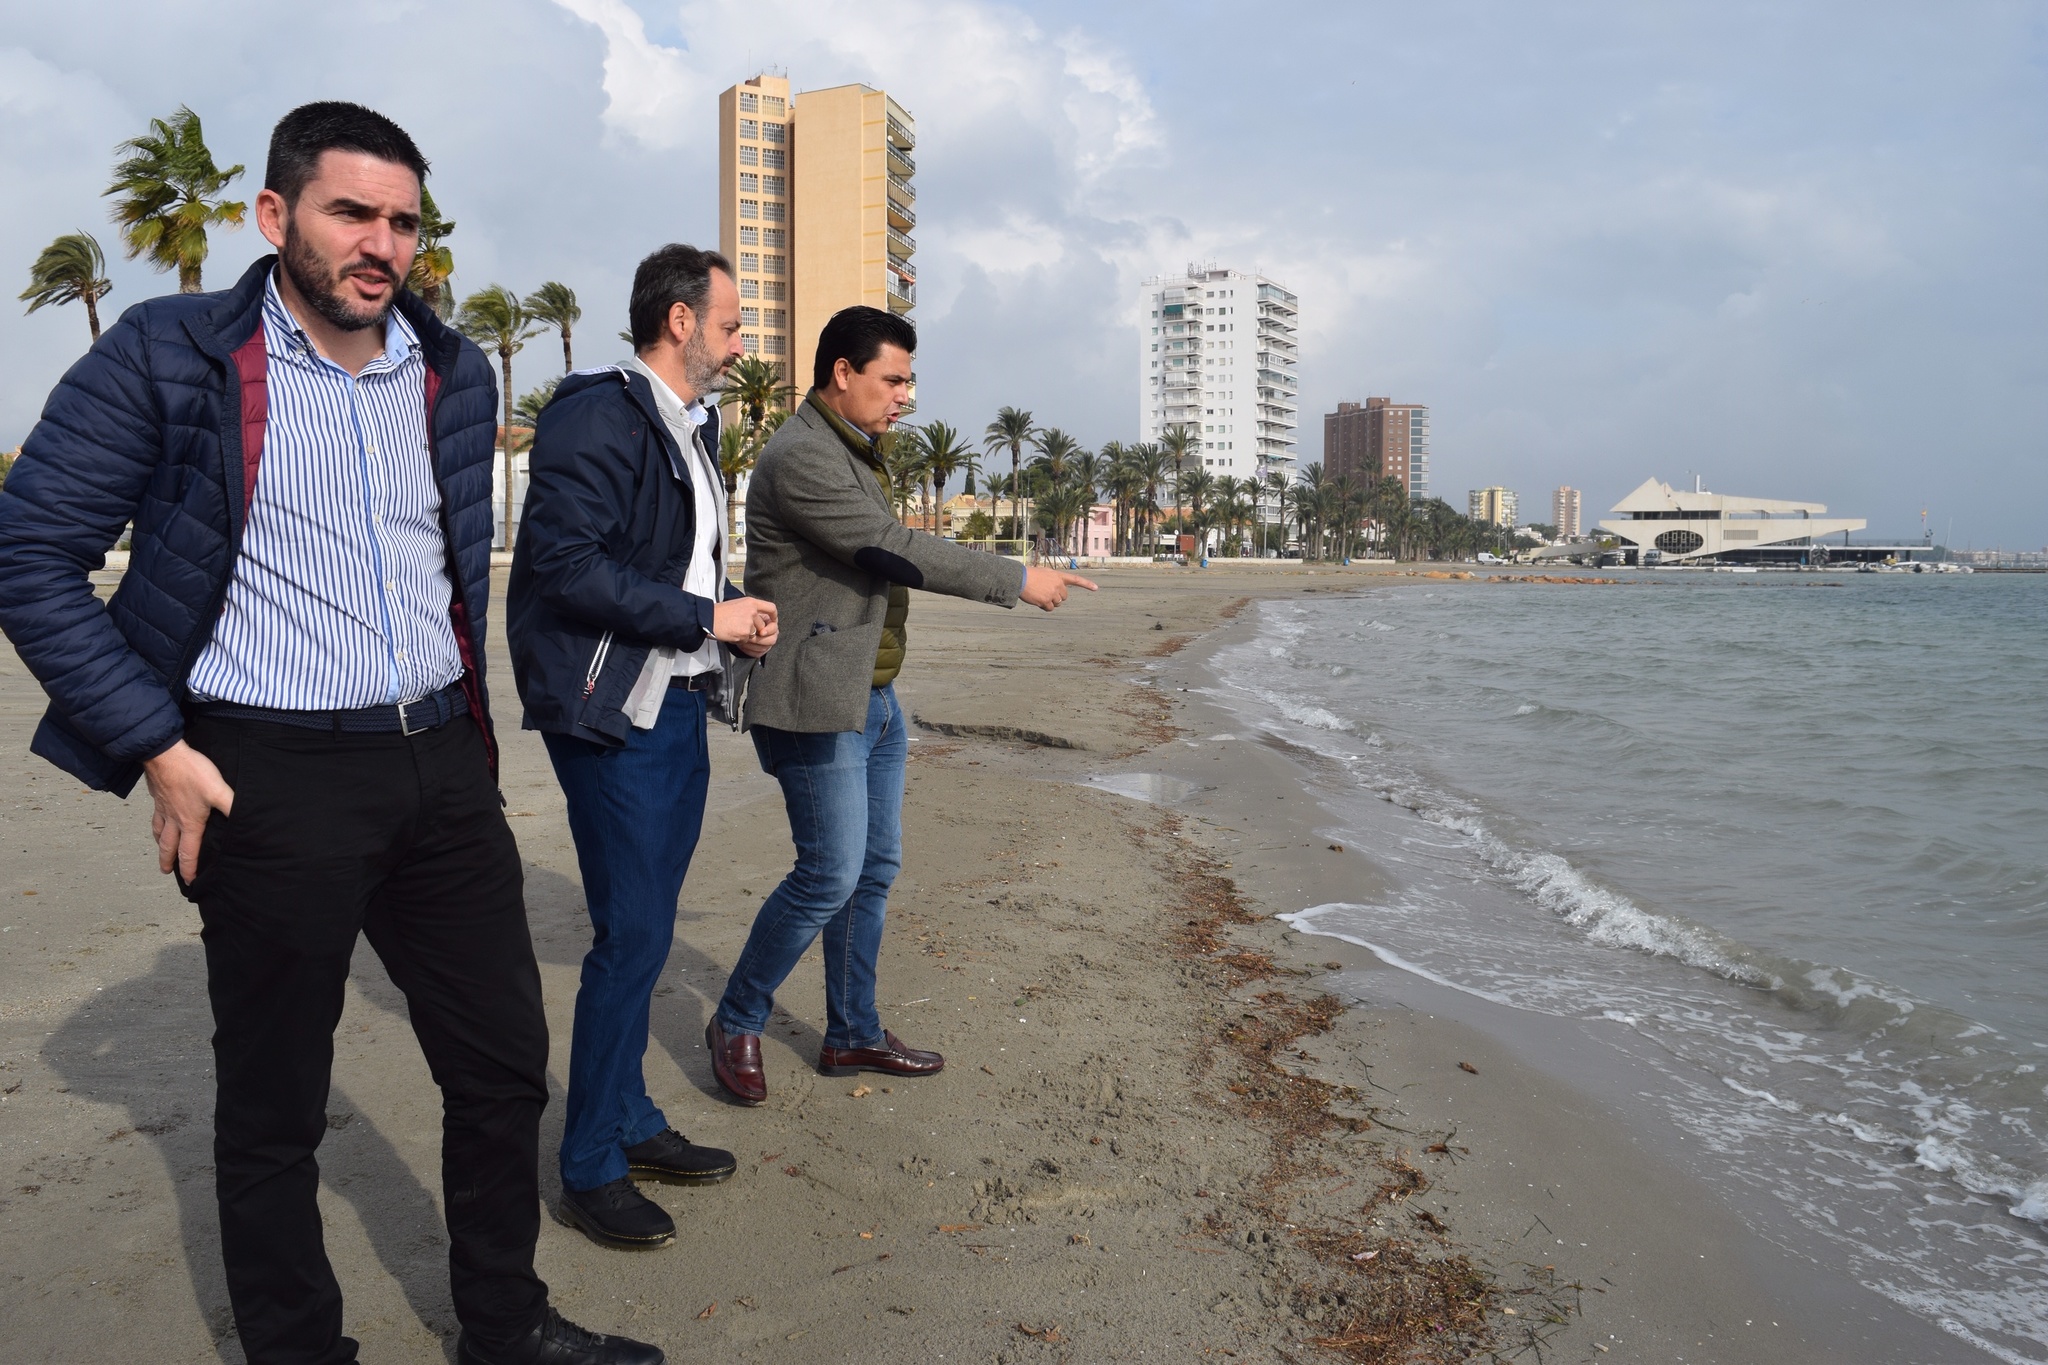 El consejero de Empleo, Universidades, Empresa y Medio Ambiente, Javier Celdrán, visita las playas de San Javier afectadas por el episodio de fuertes lluvias de las últimas horas acompañado del alcalde de la localidad, José Miguel Luengo. Imagen: CARM